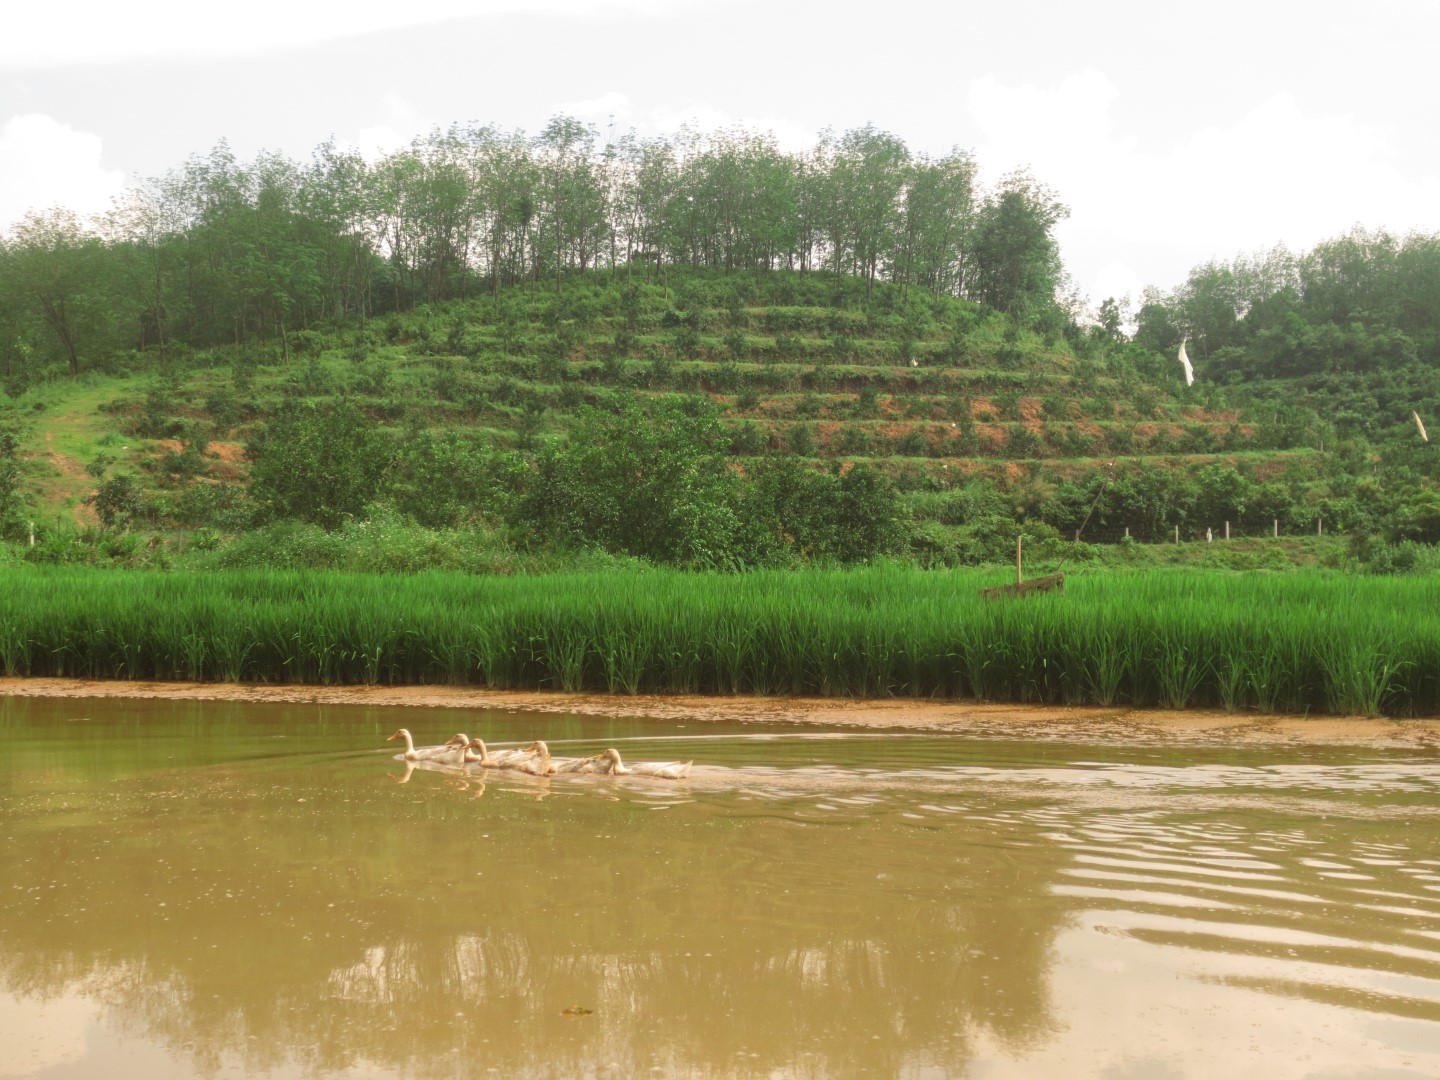 Pond in agricultural landscape